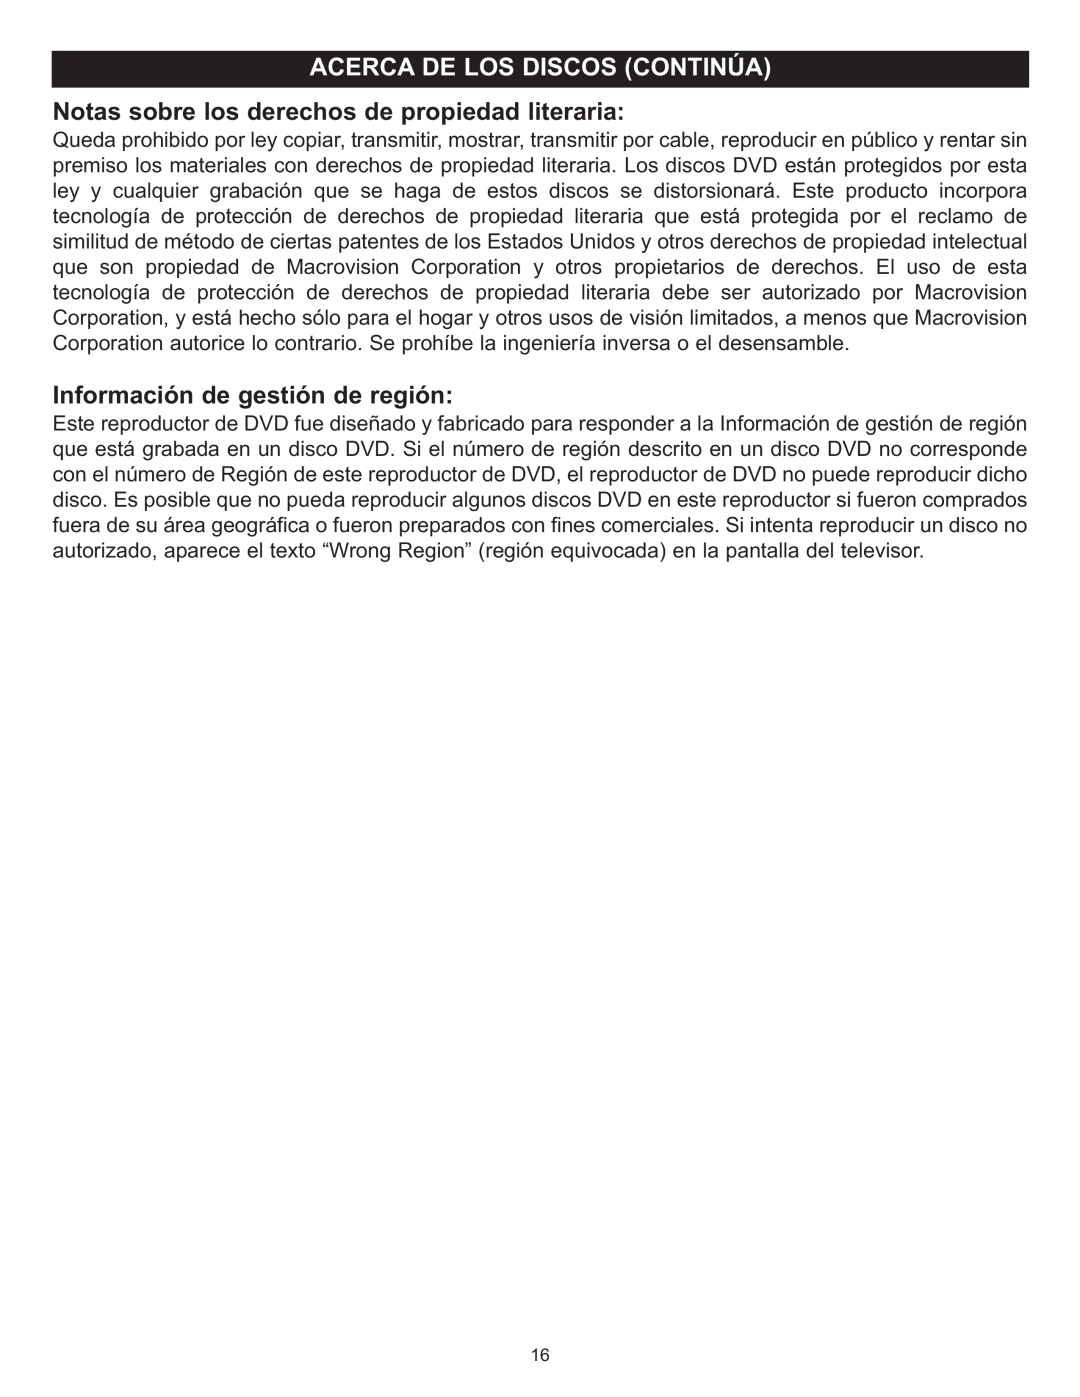 Memorex MIHT5005 manual Notas sobre los derechos de propiedad literaria, Información de gestión de región 